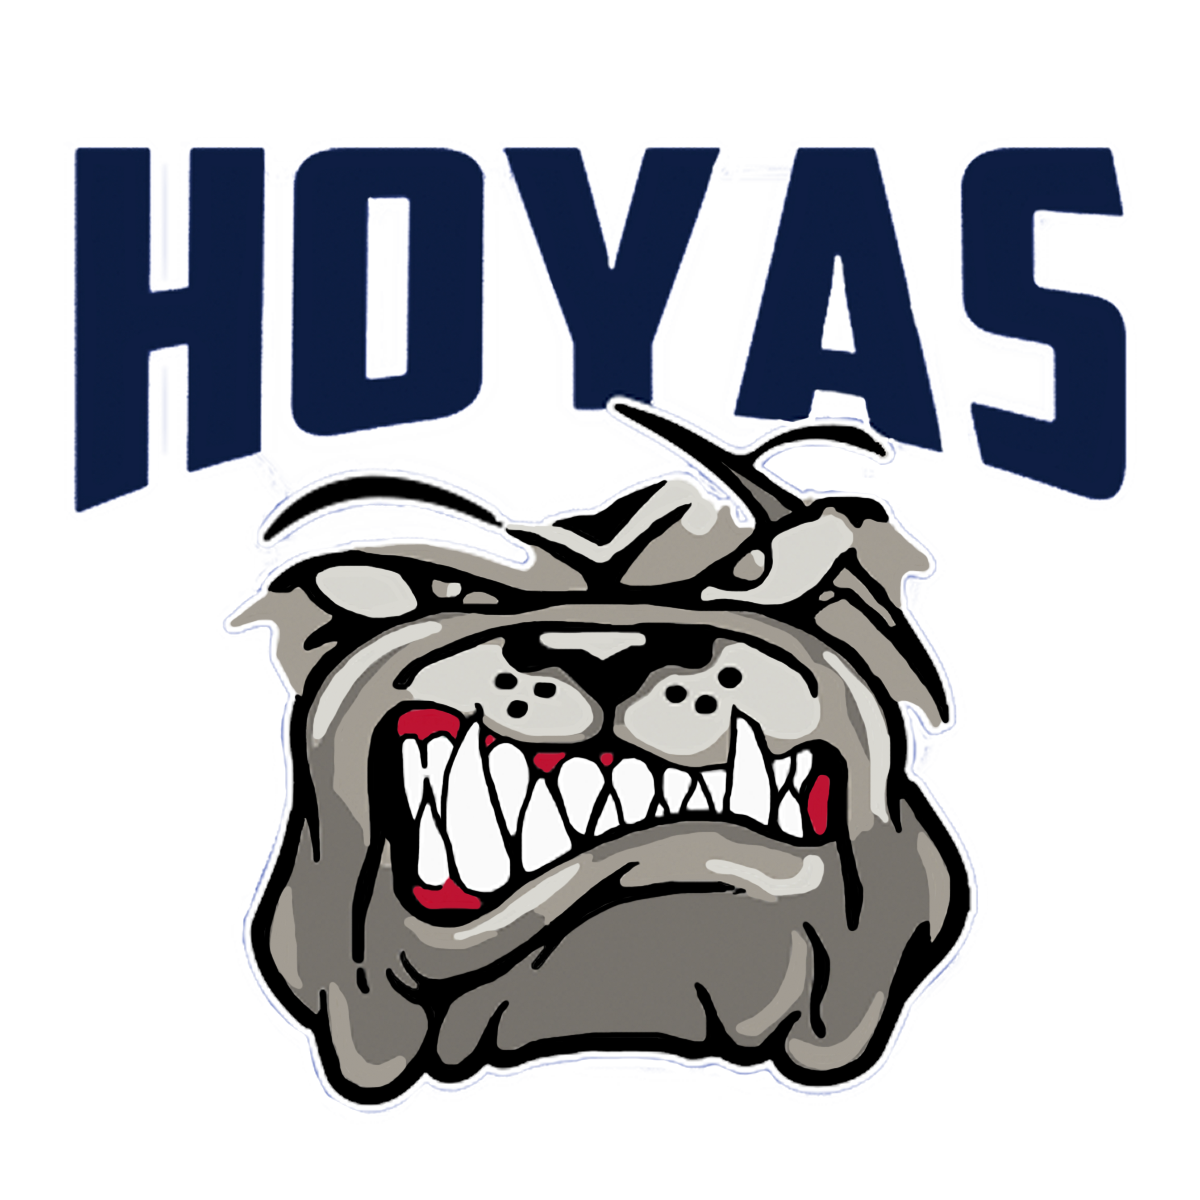 Hoya Lacrosse Team Store